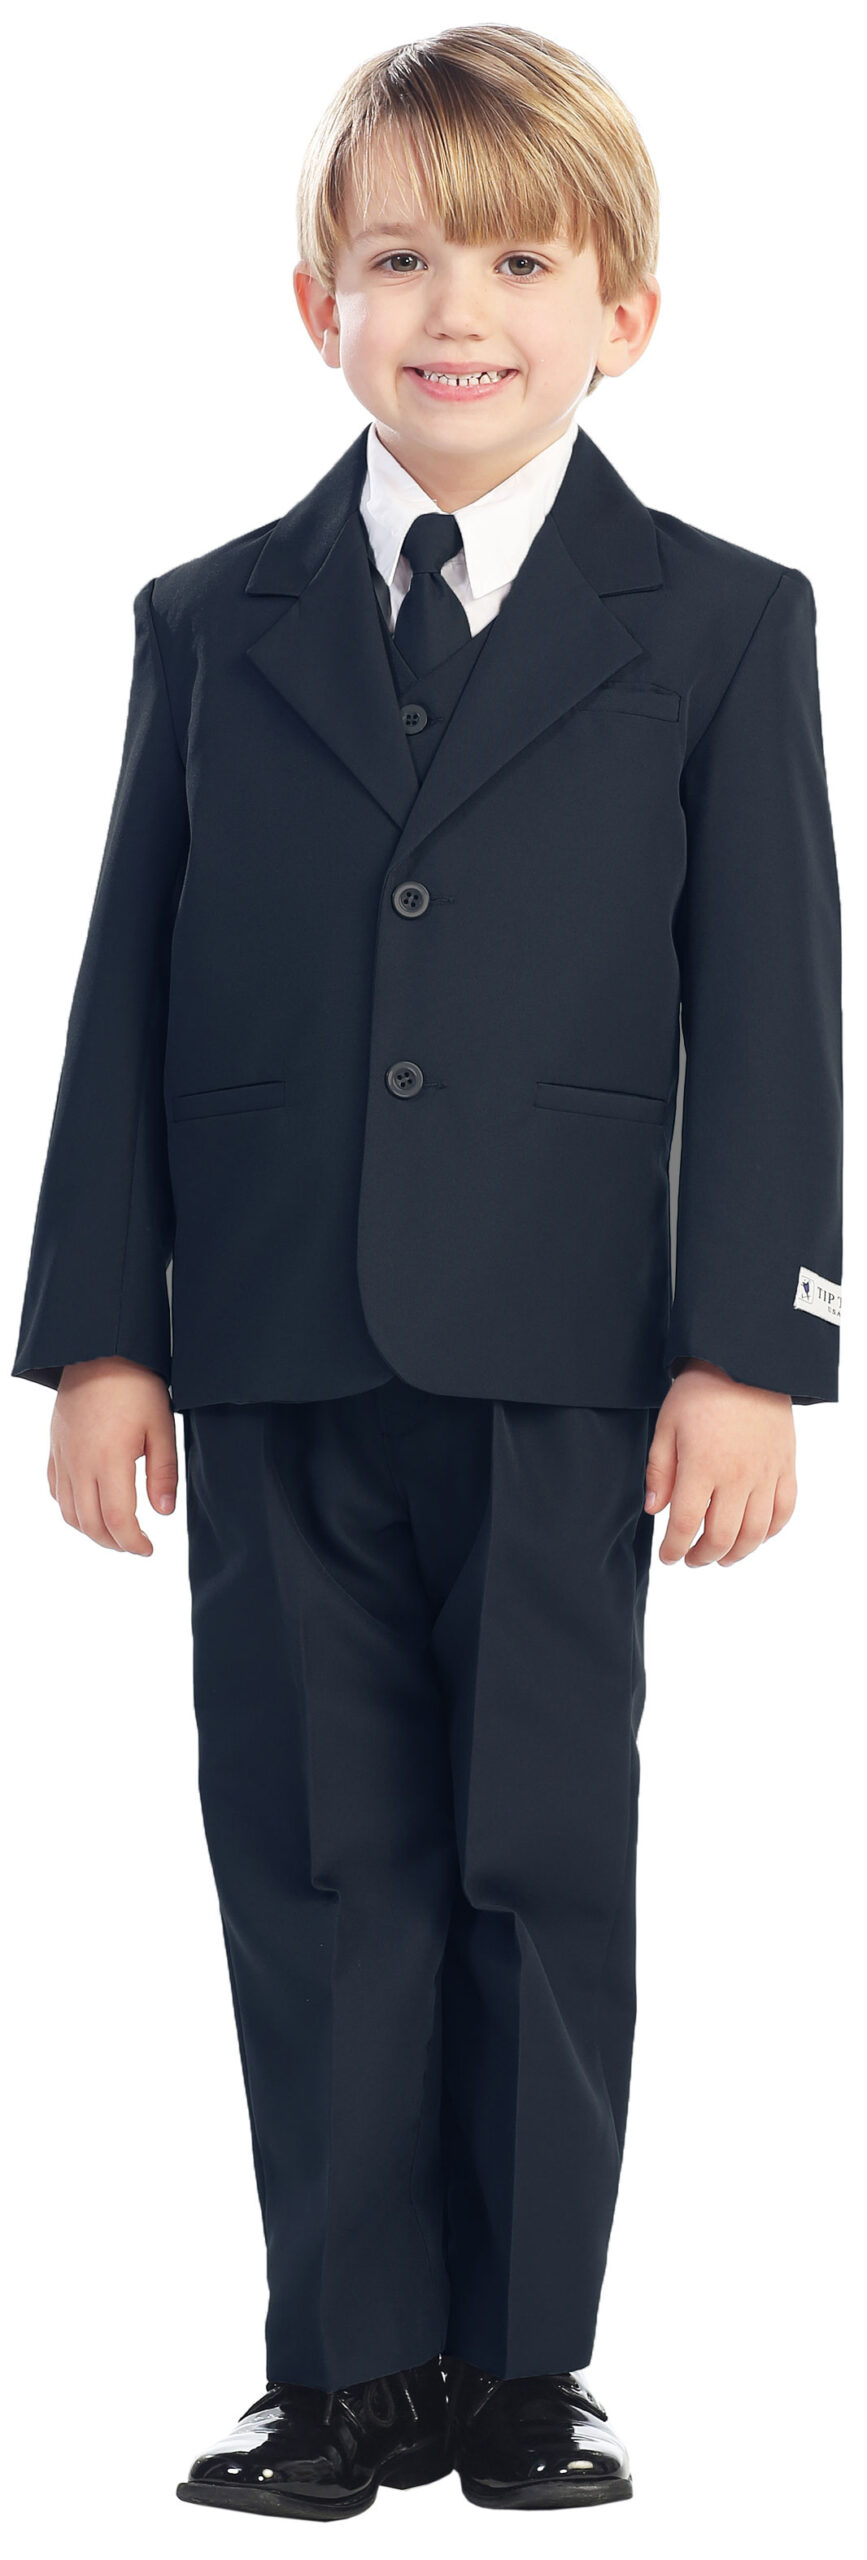 Avery Hill 5-Piece Boy's 2-Button Dress Suit Full-Back Vest - Navy Blue Size 10